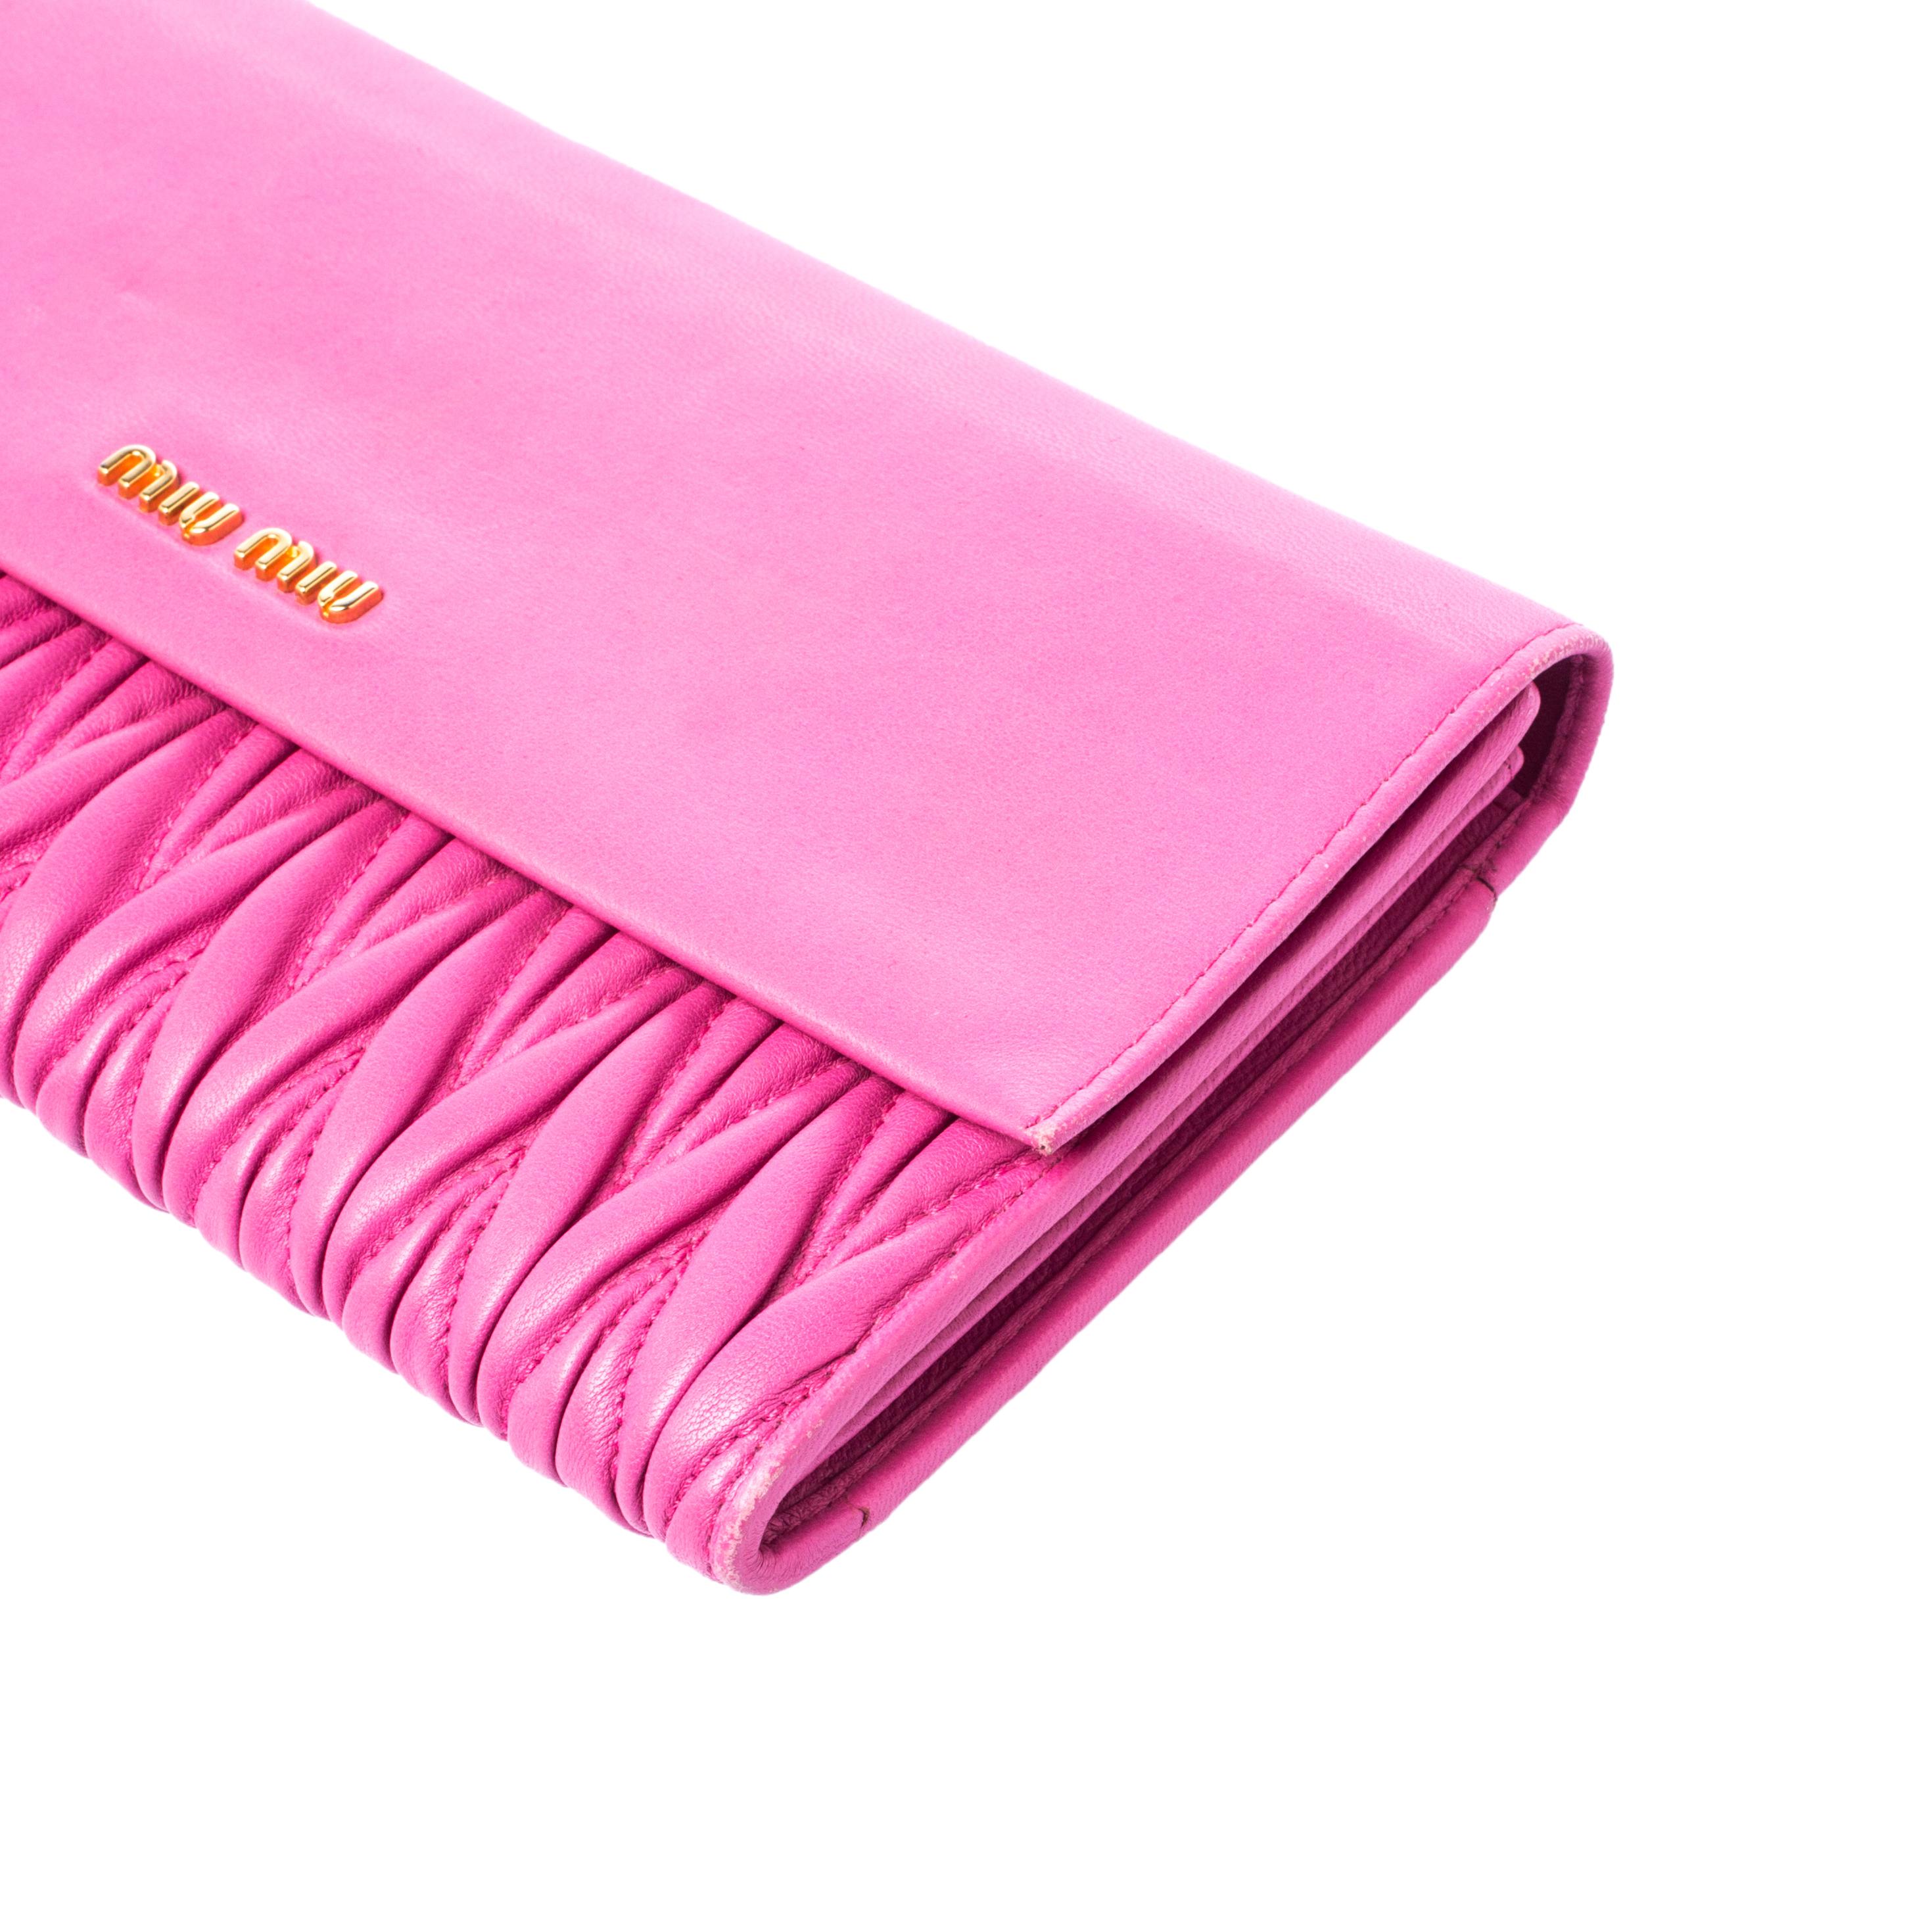 Miu Miu Pink Matelasse Leather Flap Clutch 3